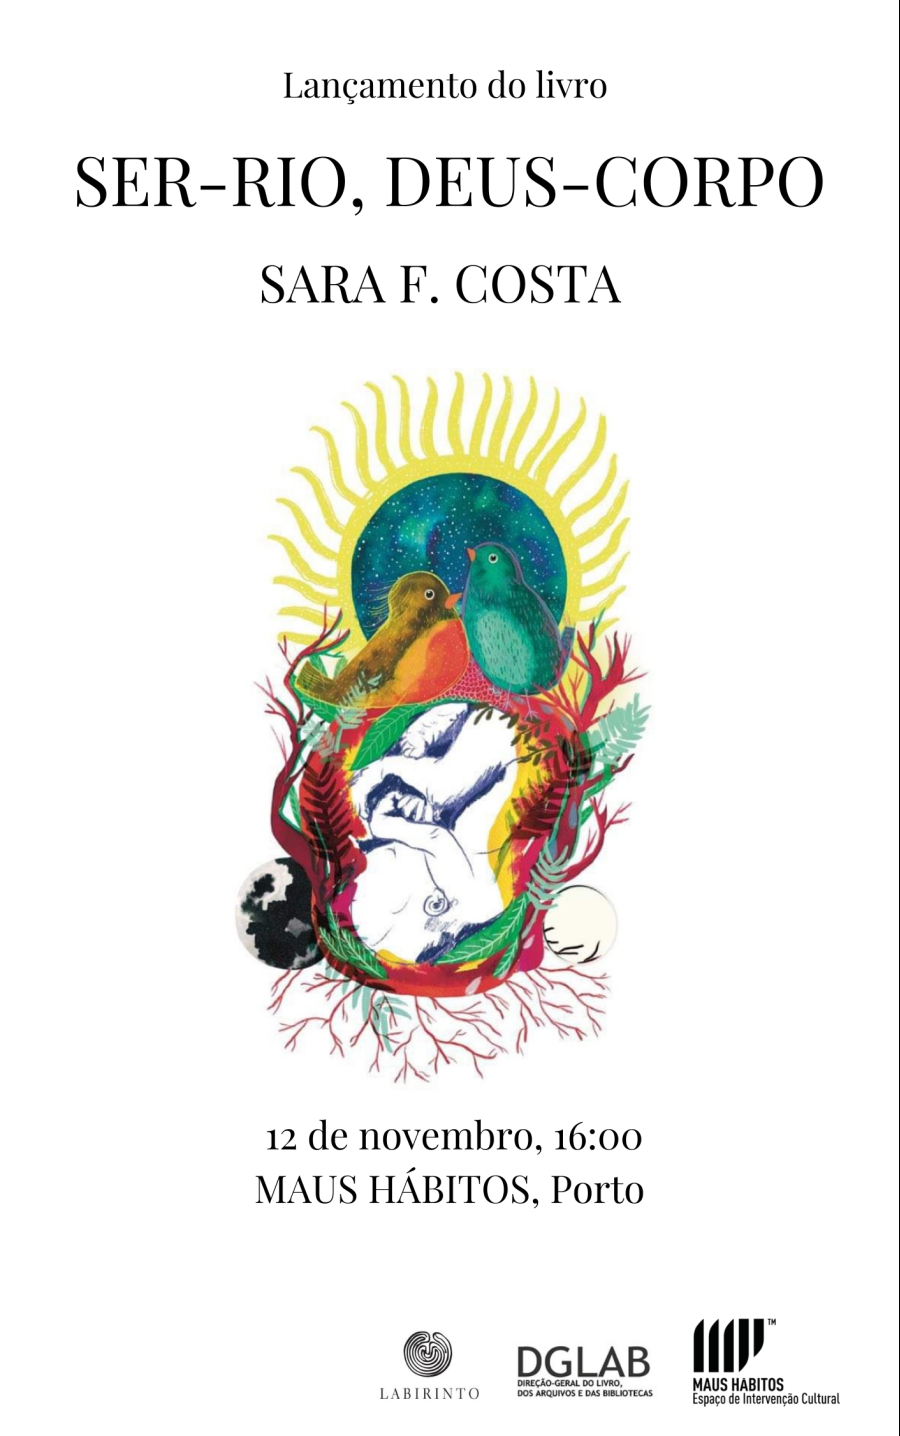 Lançamento do livro 'Ser-Rio, Deus-Corpo' Sara F. Costa